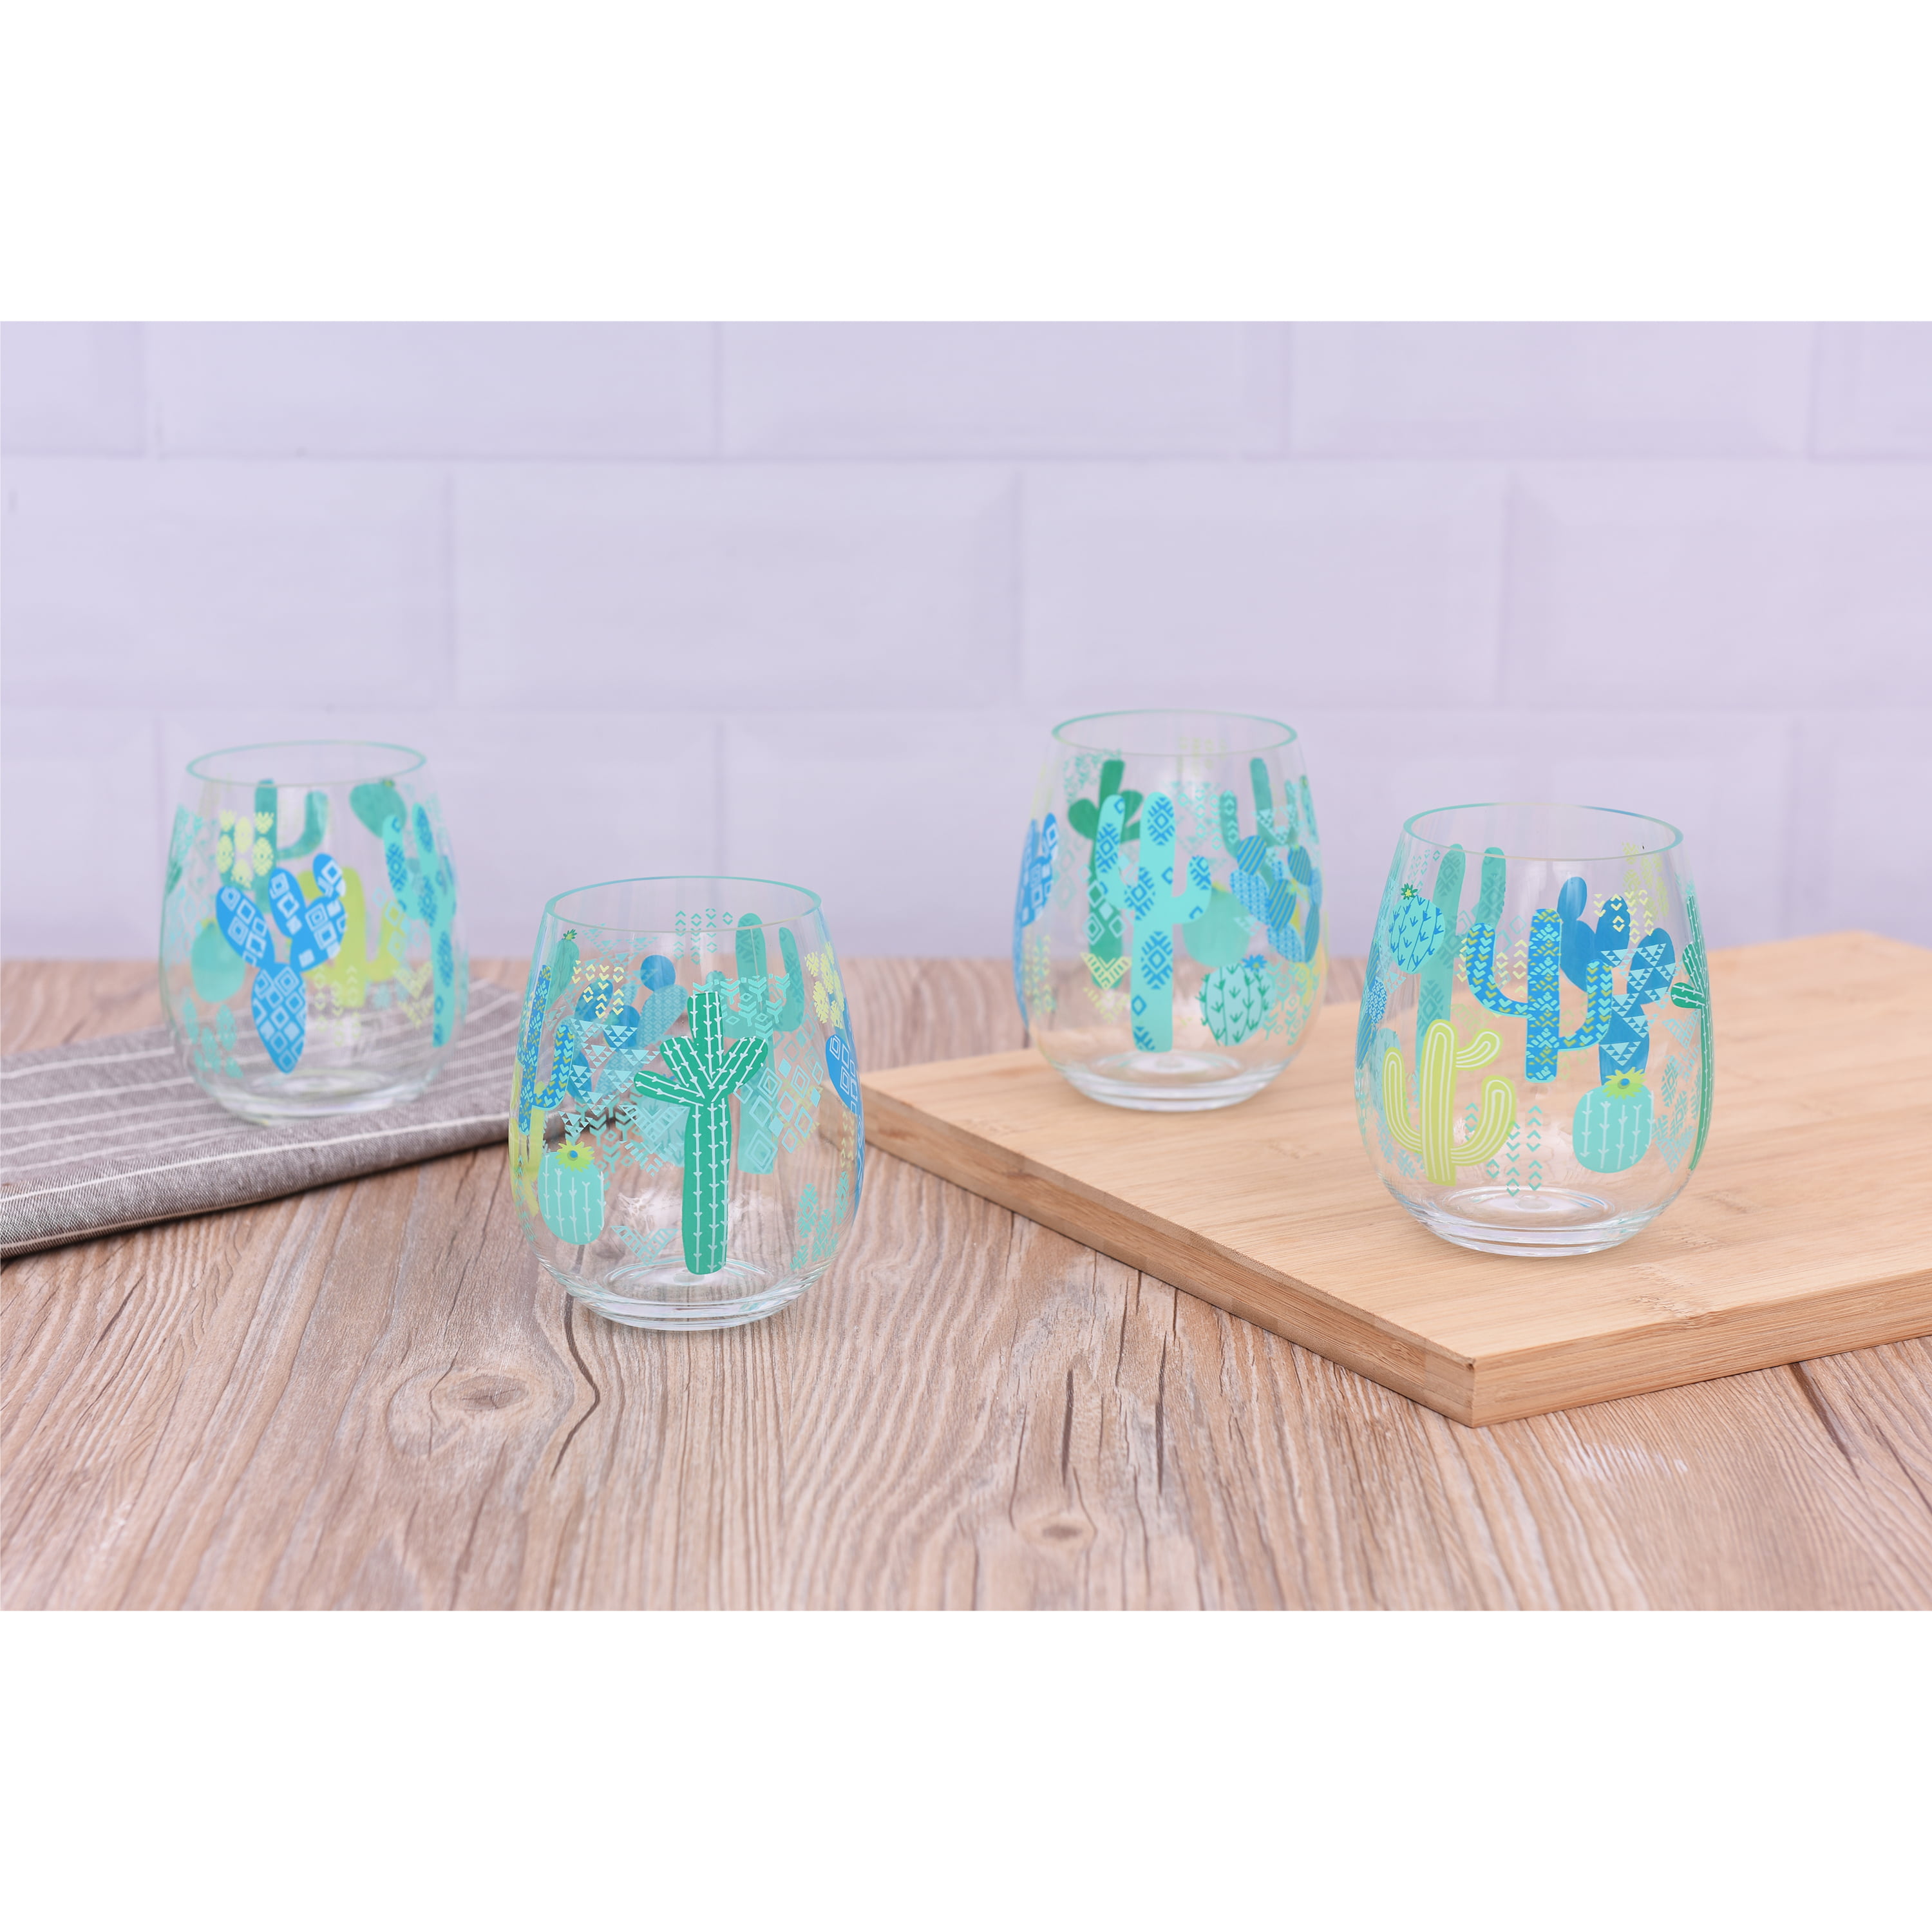 Spode Blue Italian Set of 4 (19 oz) Stemless Wine Glasses